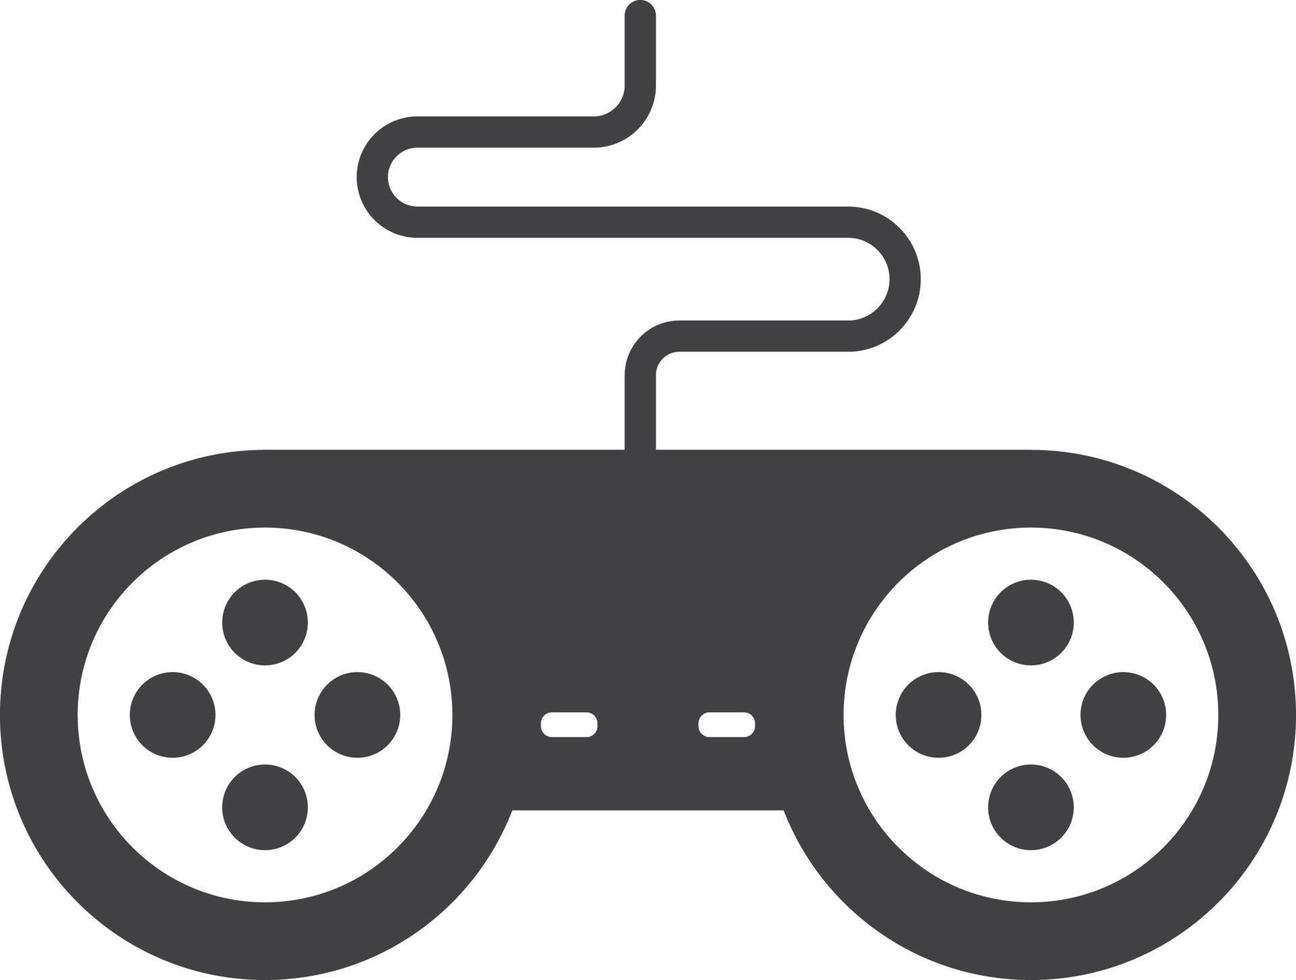 joystick para ilustración de juegos en estilo minimalista vector